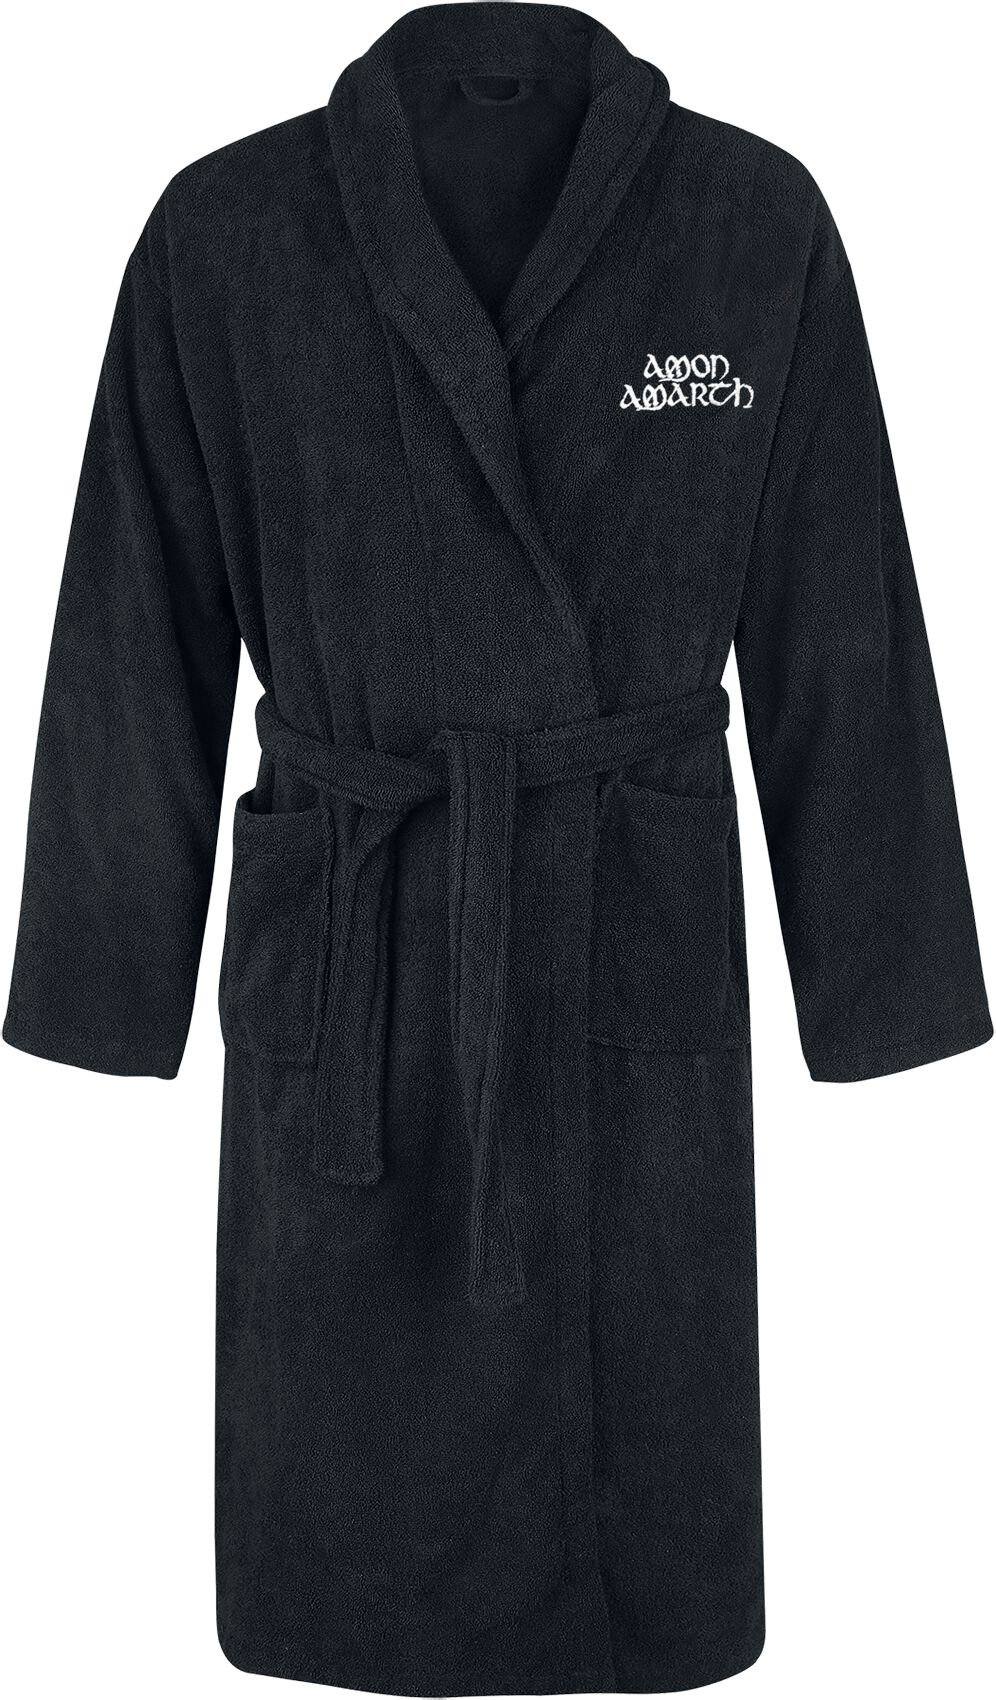 Amon Amarth Bademantel - Logo - S-M bis XXL-3XL - Größe XXL-3XL - schwarz  - EMP exklusives Merchandise!